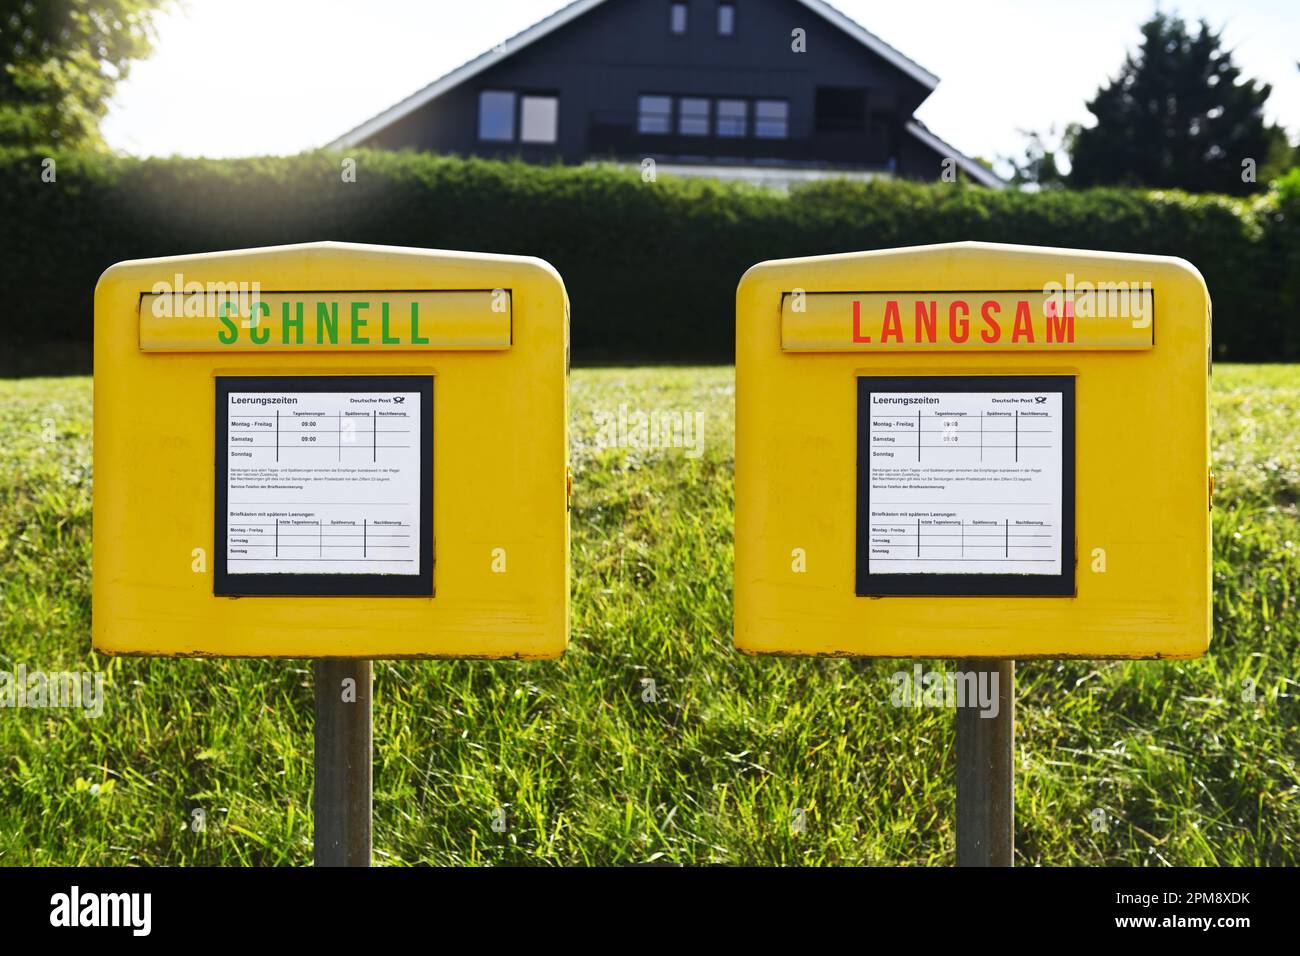 FOTOMONTAGE, Zwei Briefkästen mit Aufschrift schnell und langsam, Symbolfoto für eine Zwei-Klassen-Briefzustellung Foto de stock